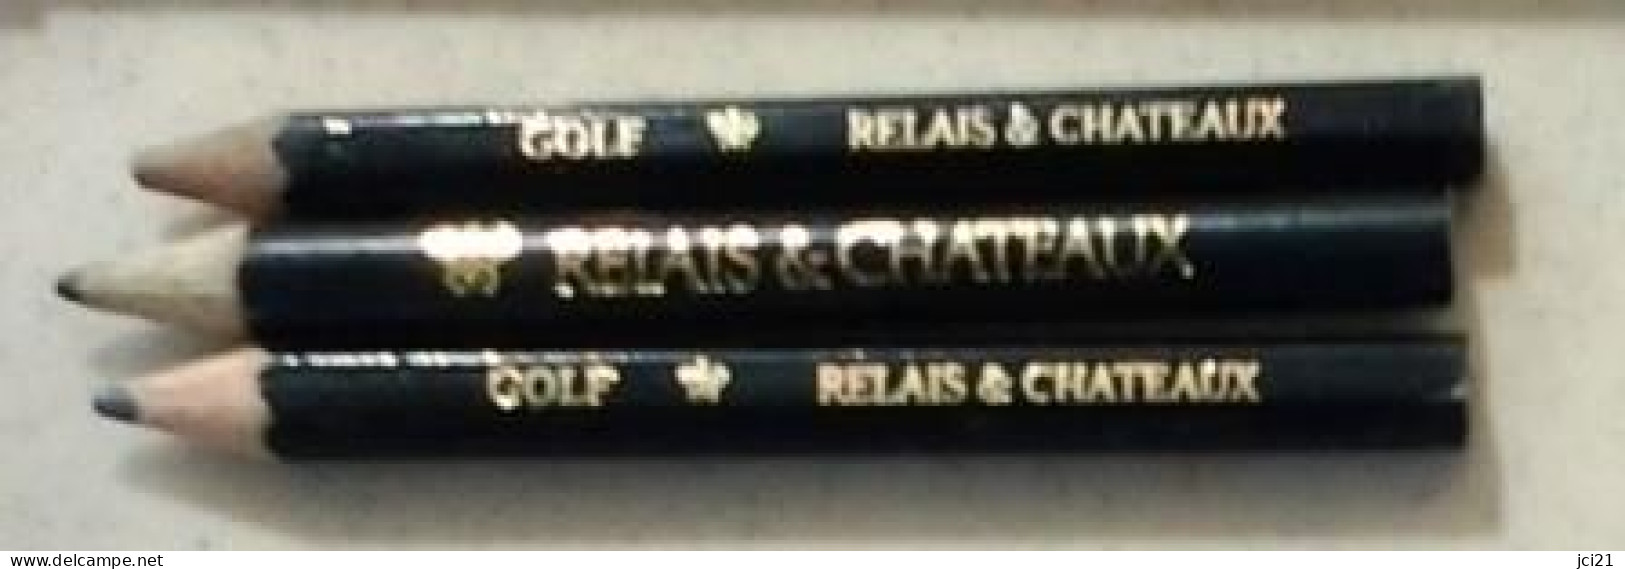 Lot De 3 Crayons " RELAIS & CHATEAUX Et GOLF RELAIS & CHATEAUX " (Bte Stylo) _Di397 - Pens